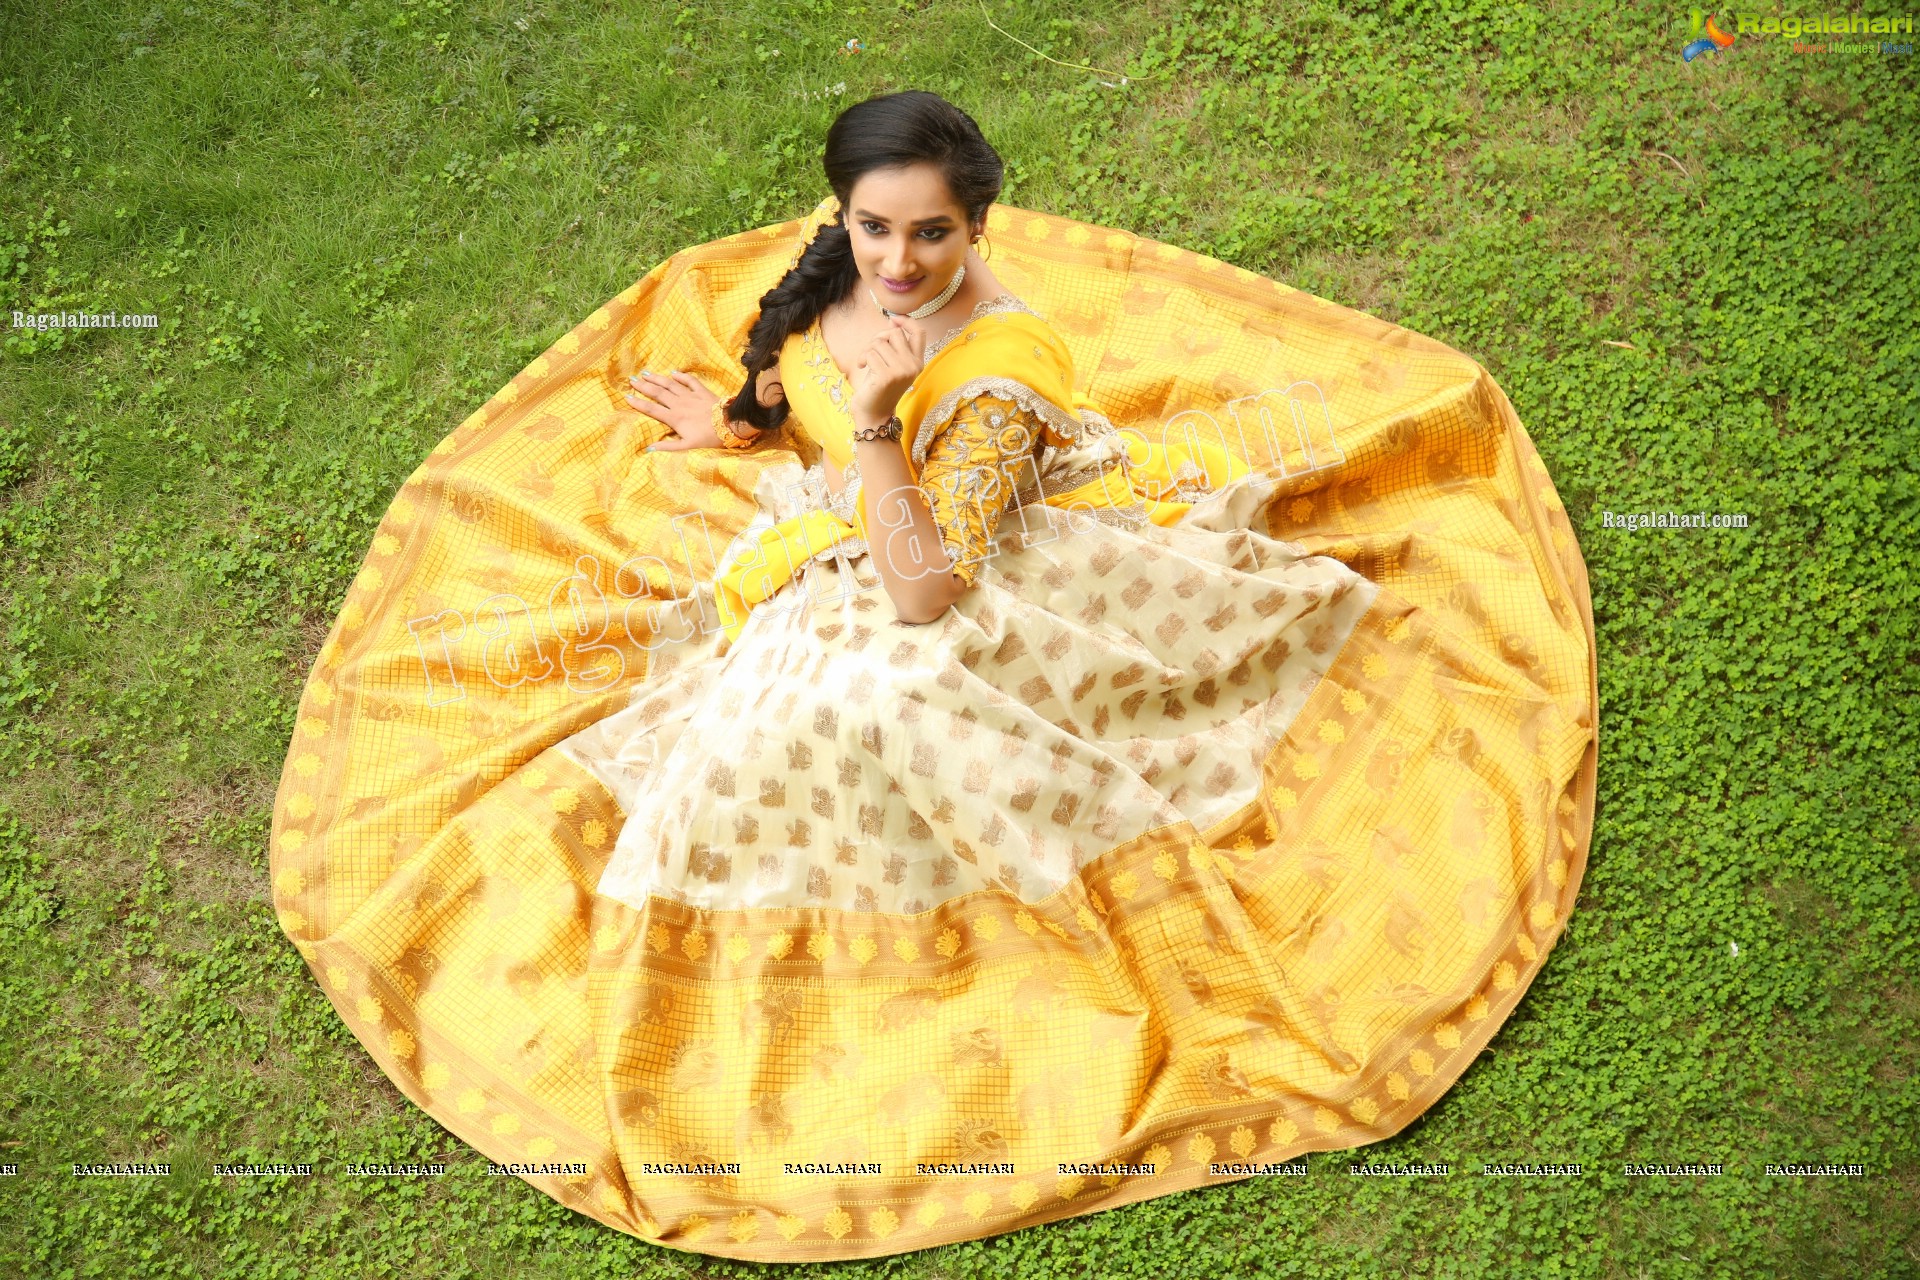 Madhu Krishnan in Cream and Yellow Lehenga Choli, Exclusive Photoshoot